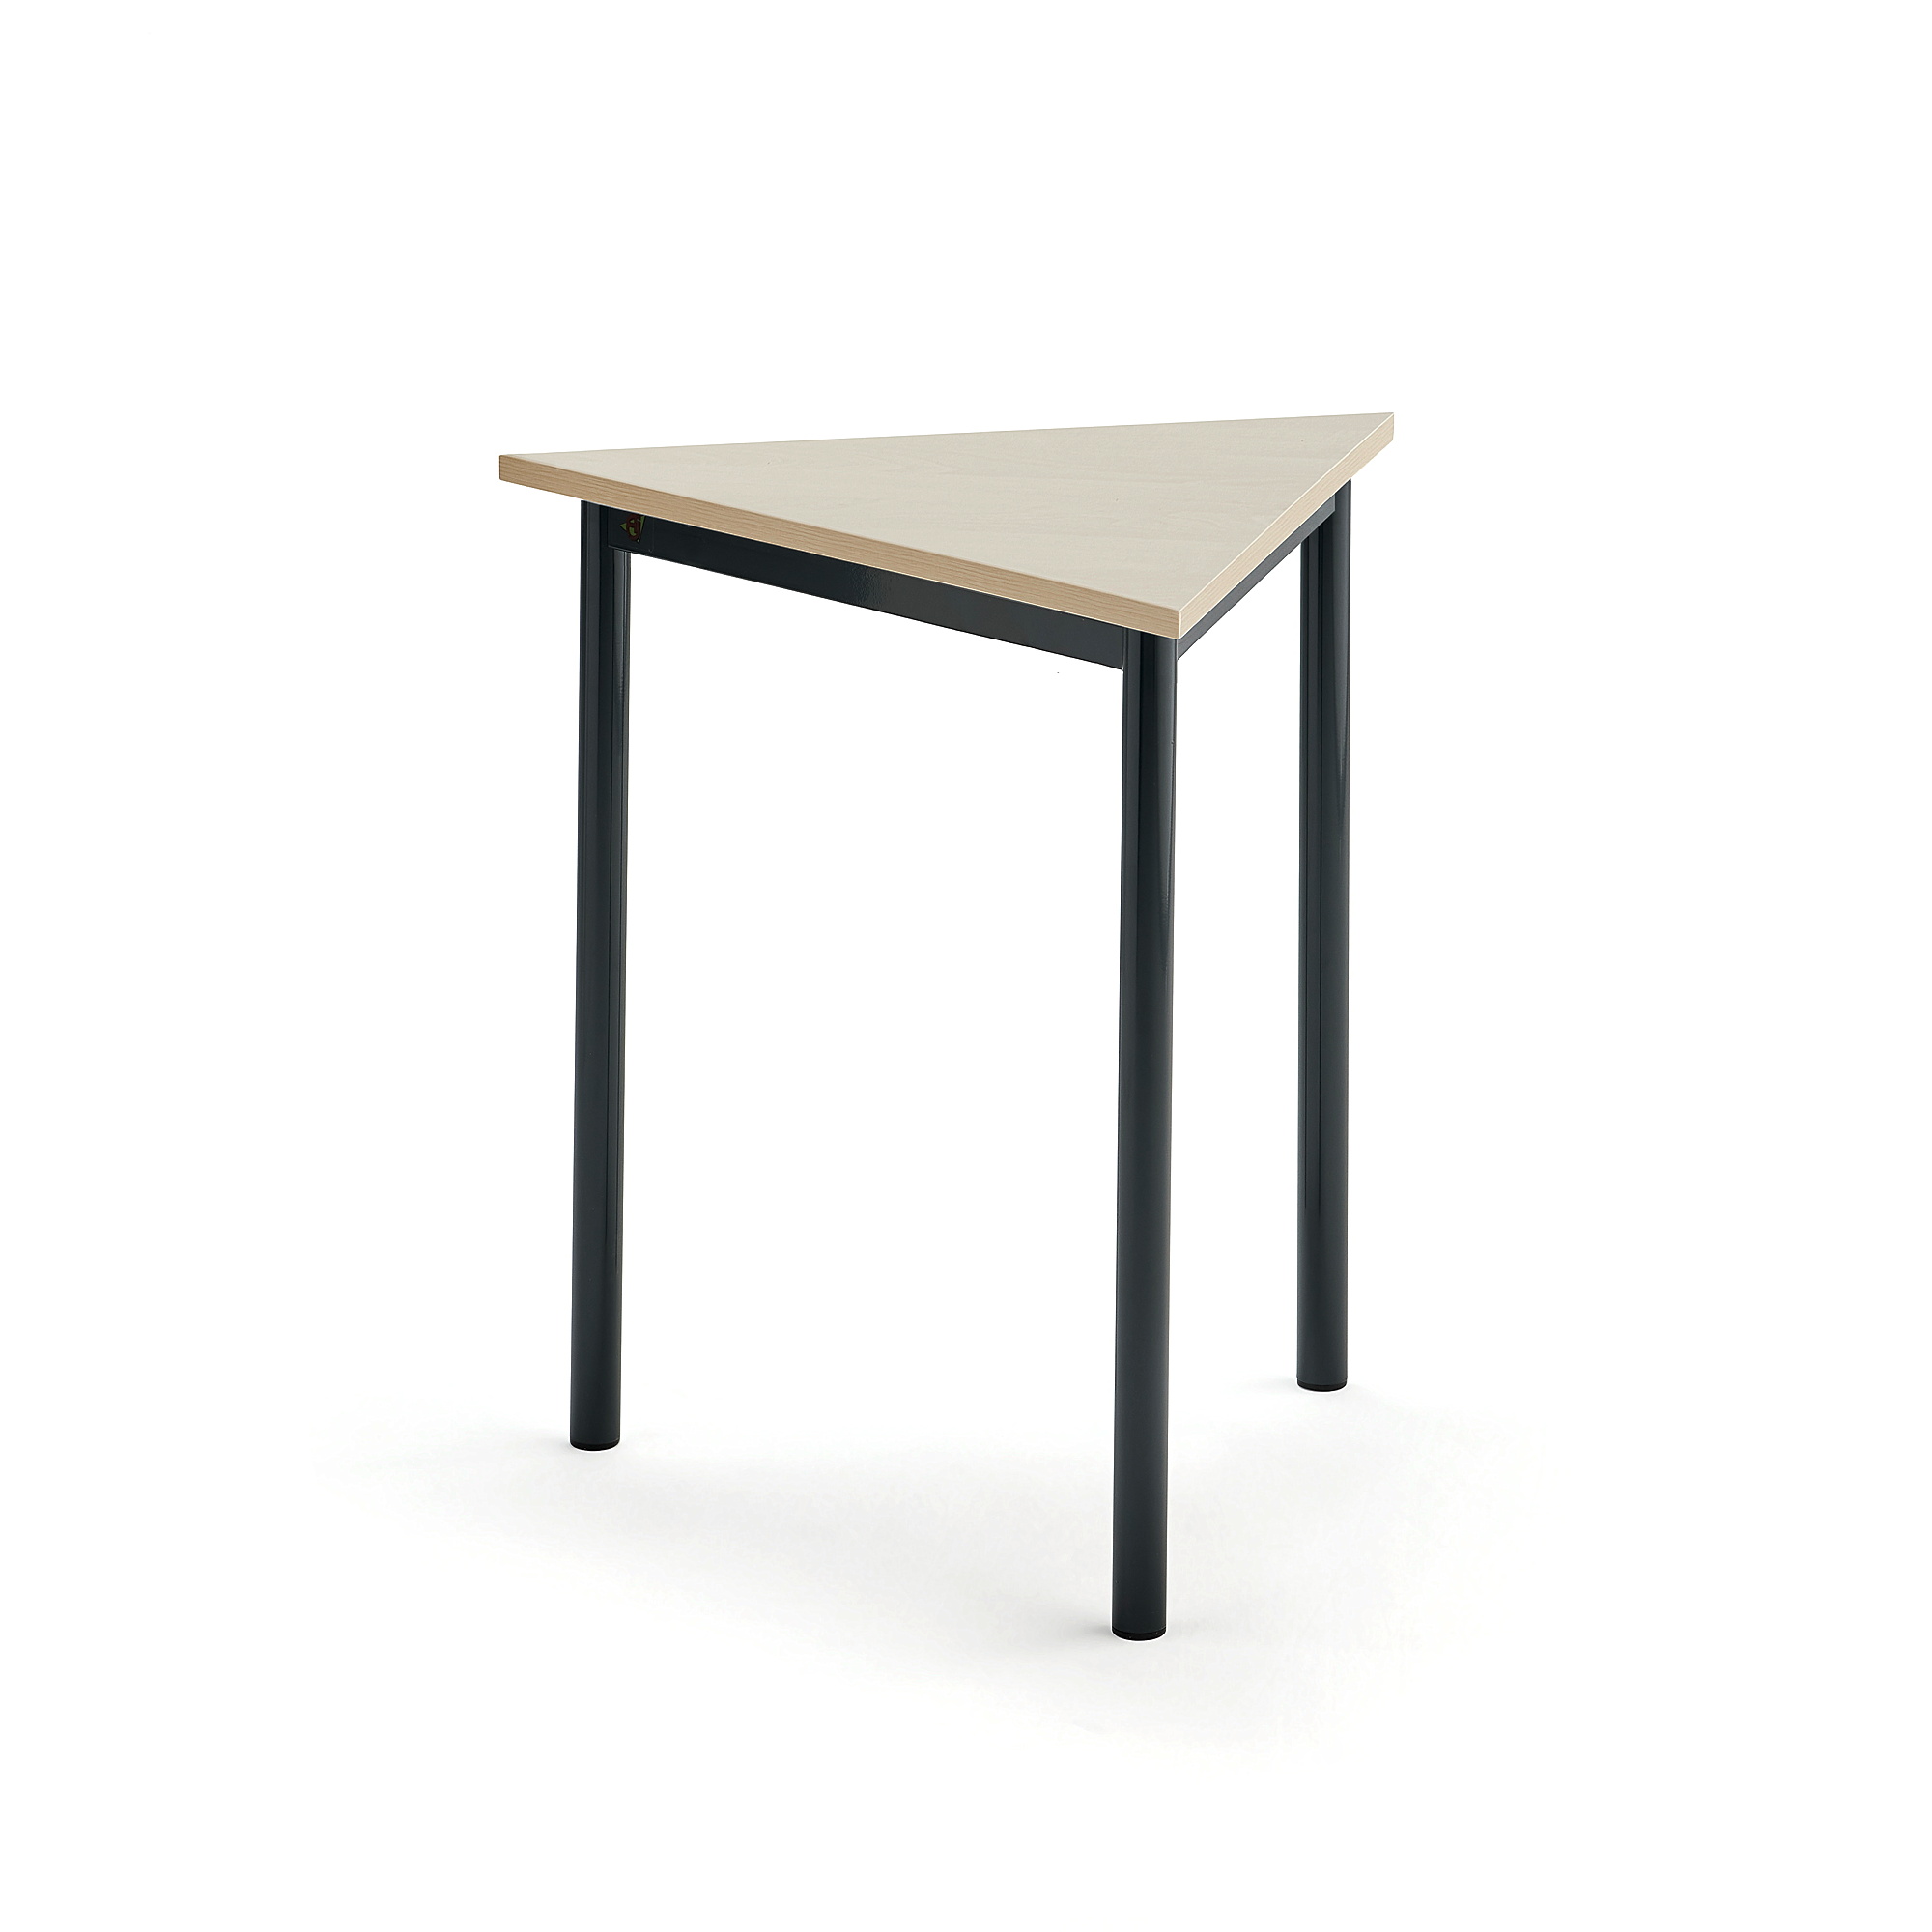 Stůl SONITUS TRIANGEL, 700x700x720 mm, antracitově šedé nohy, HPL deska tlumící hluk, bříza